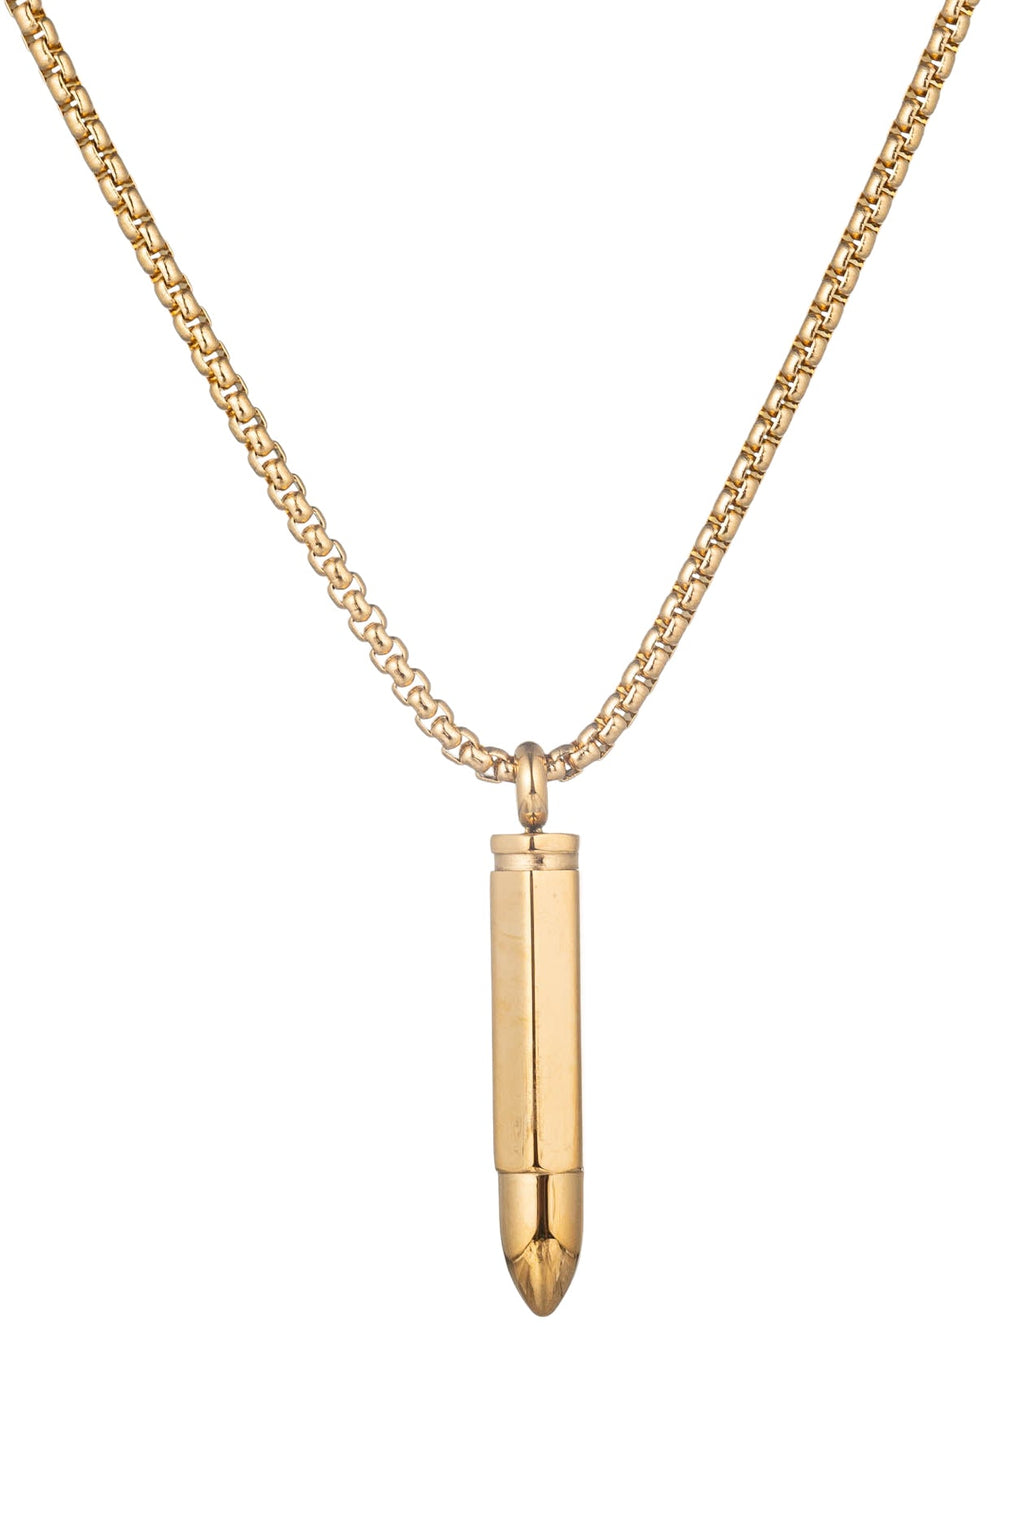 Leon Gold Titanium Gold Tone Necklace